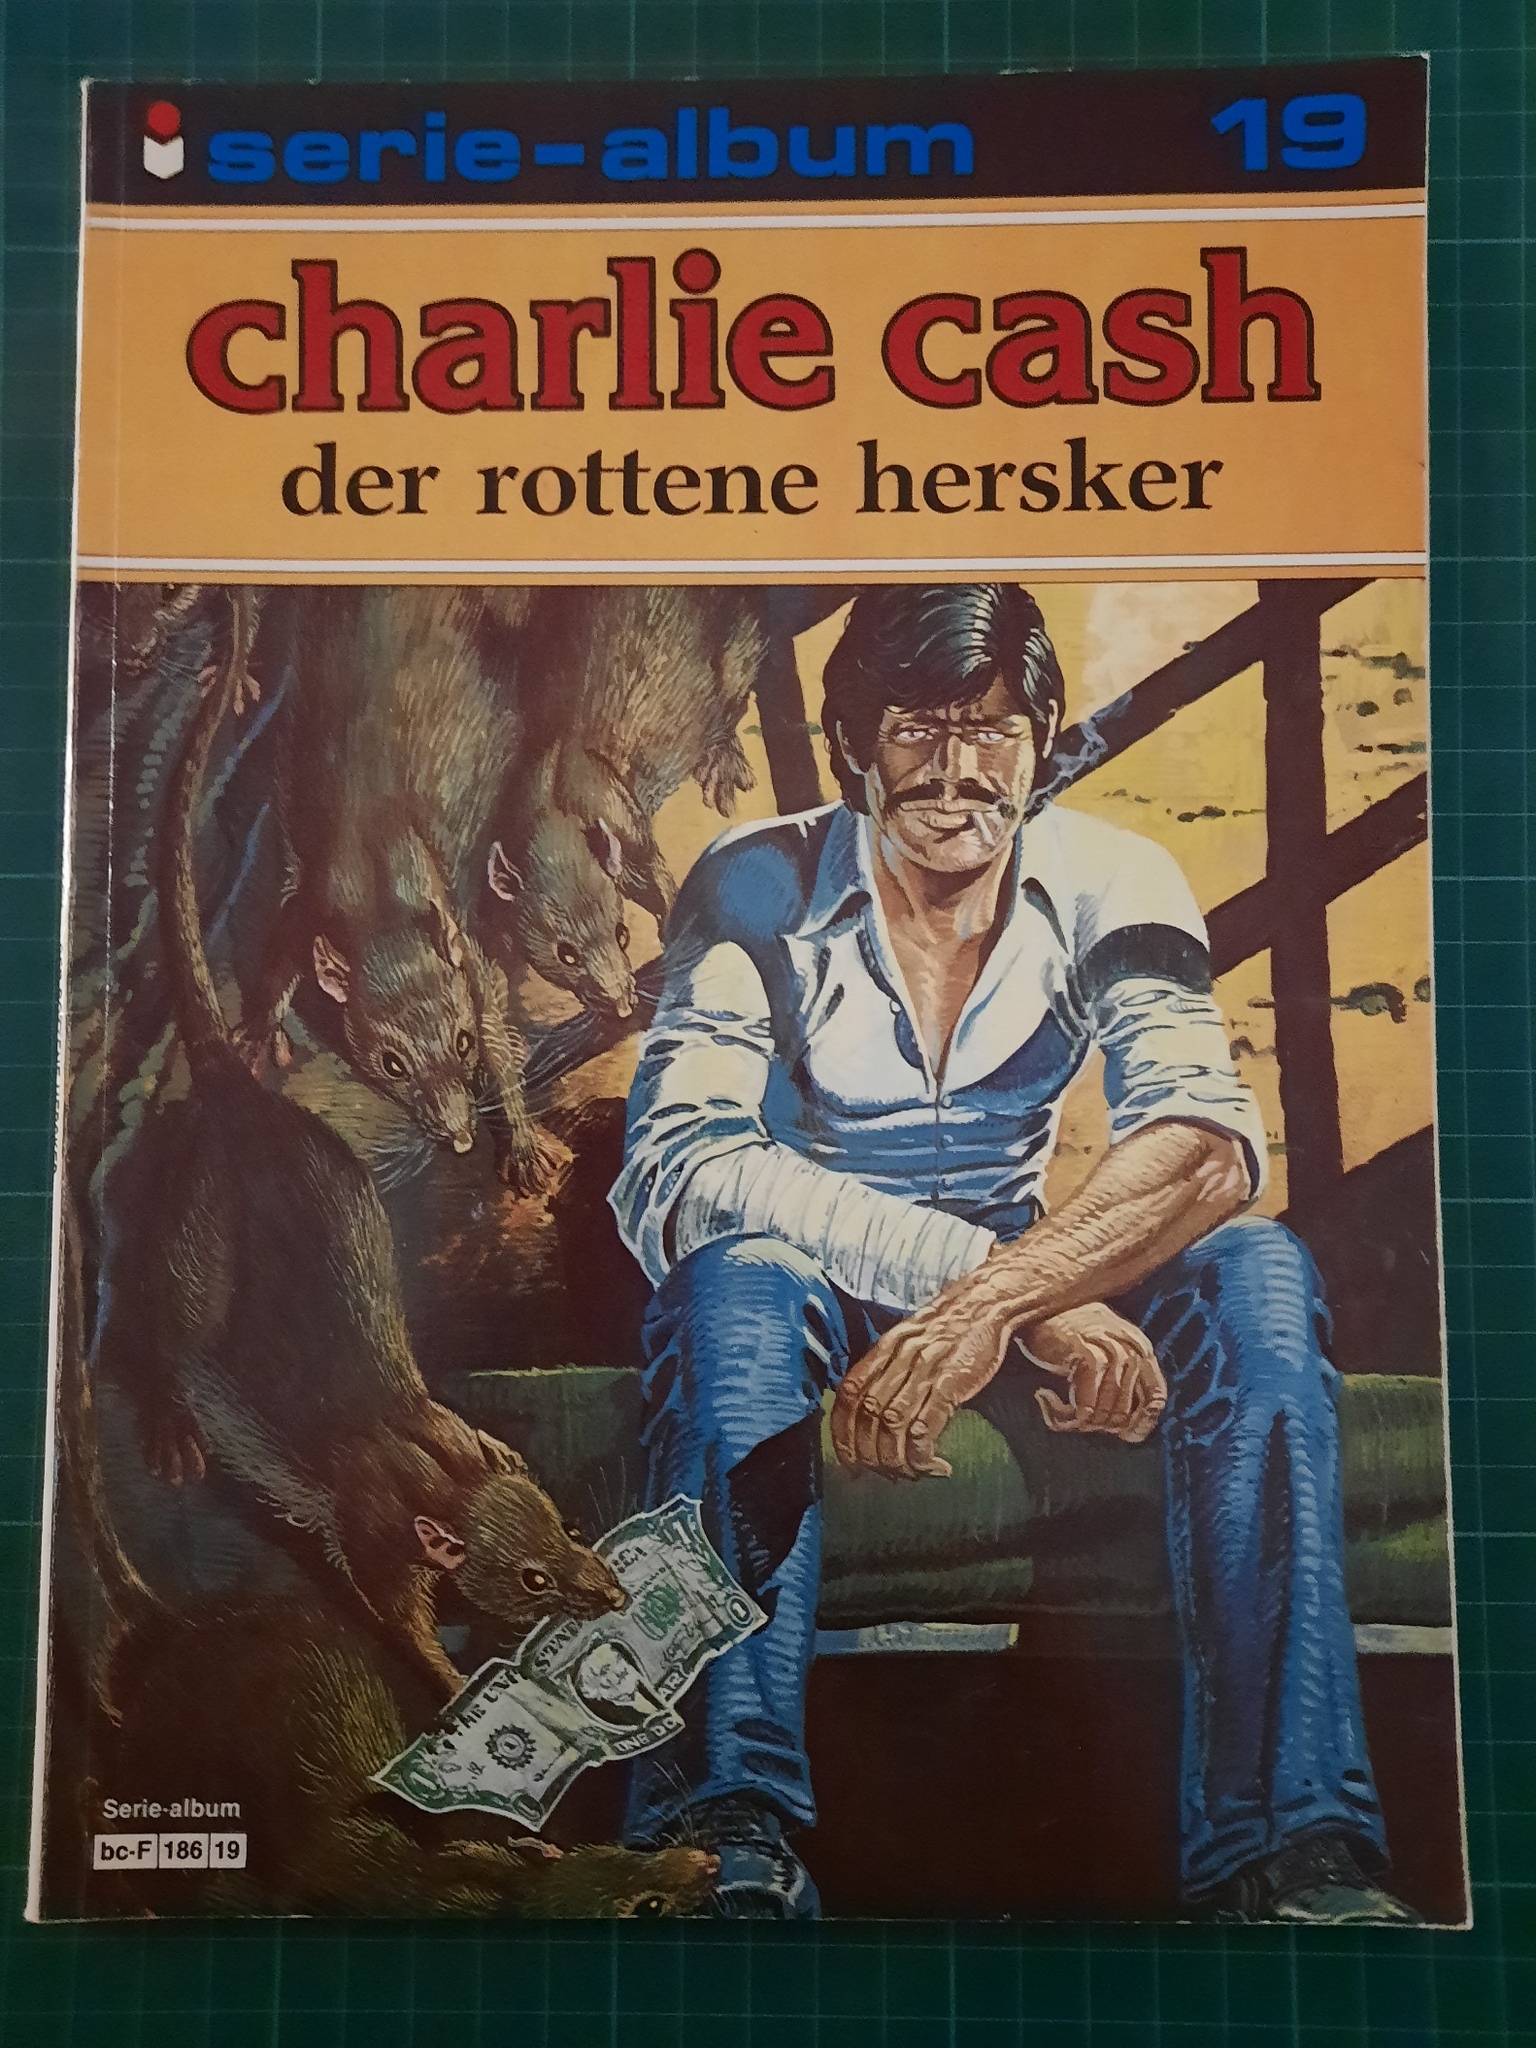 Charlie Cash: Der rottene hersker